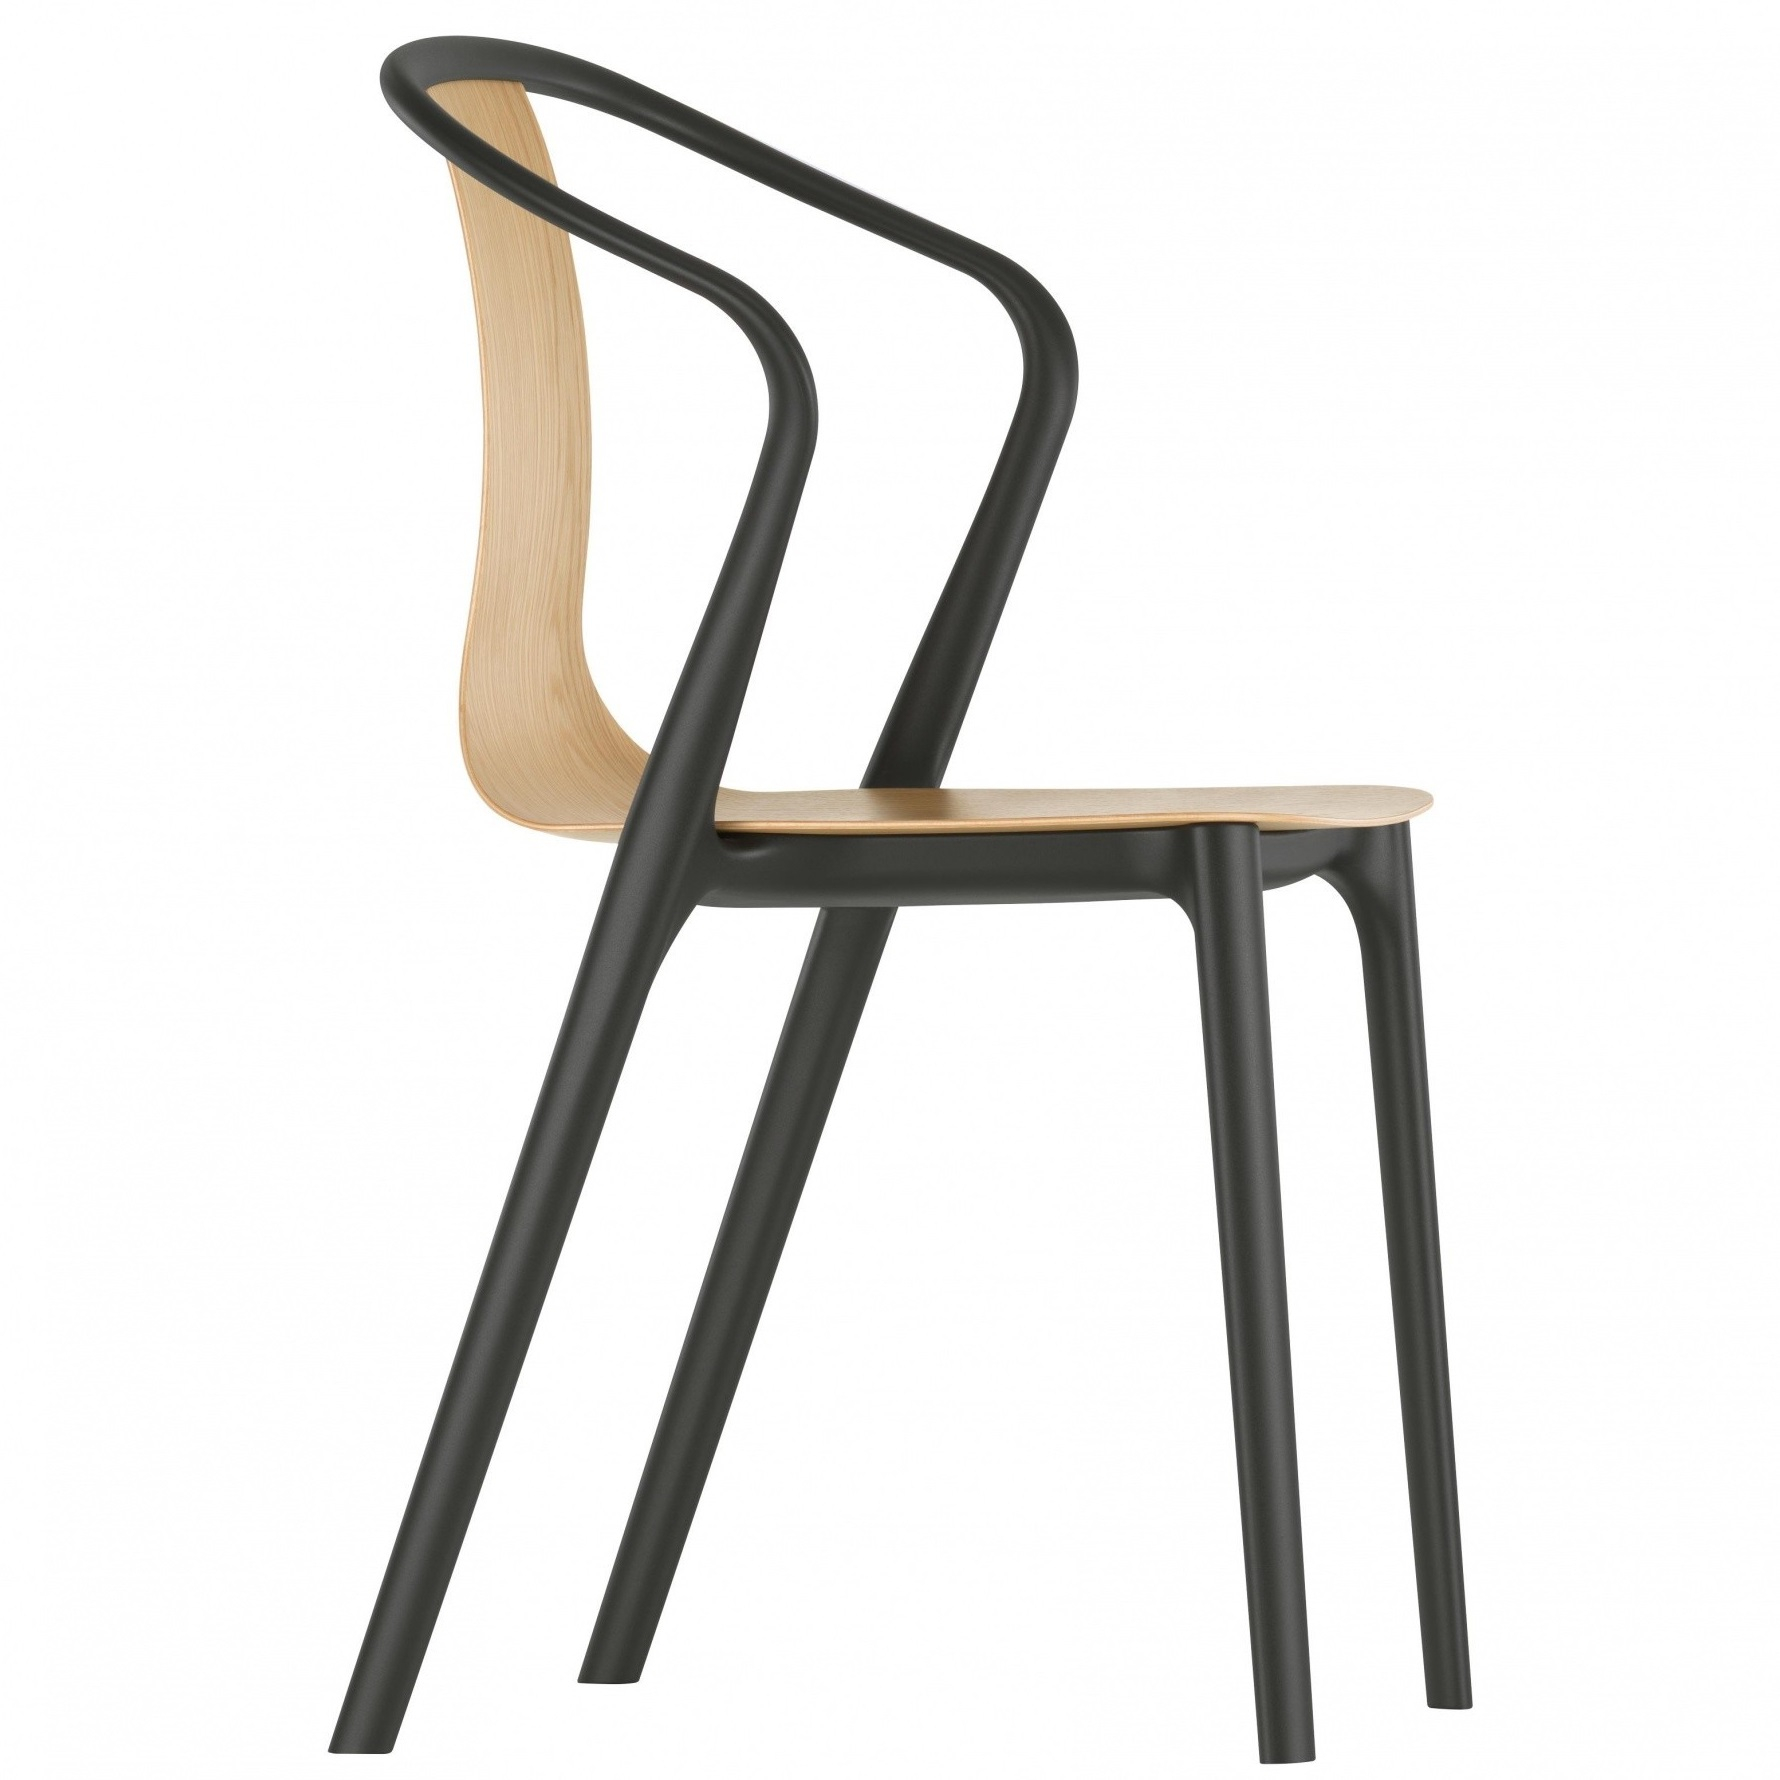 Výprodej Vitra designové židle Belleville Armchair (dub)